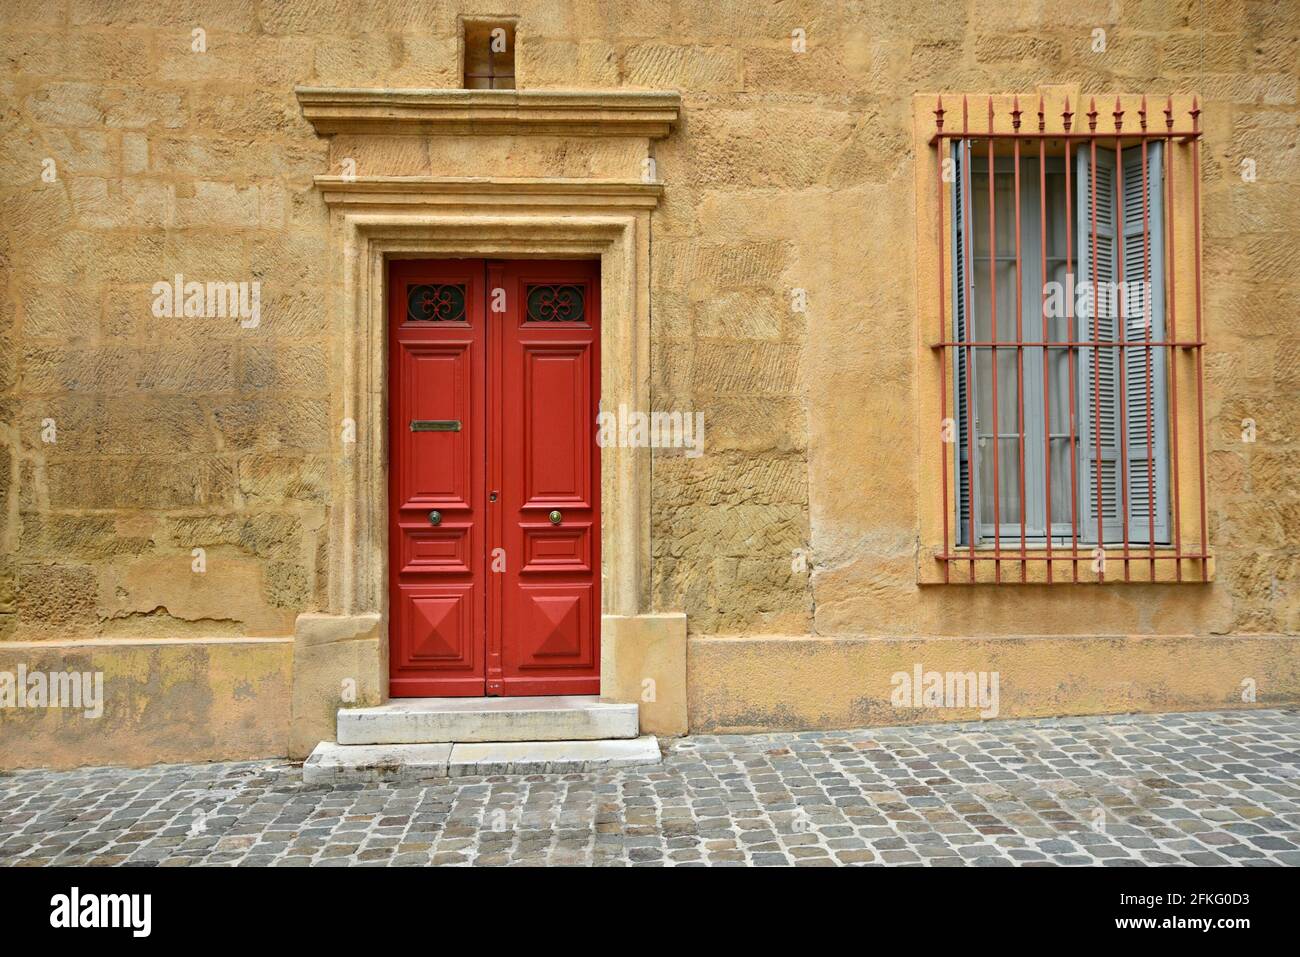 Façade de maison de style provençal avec un mur en stuc ocre, une porte rouge vif et une fenêtre avec des volets en bois à Aix-en-Provence Marseille, France. Banque D'Images